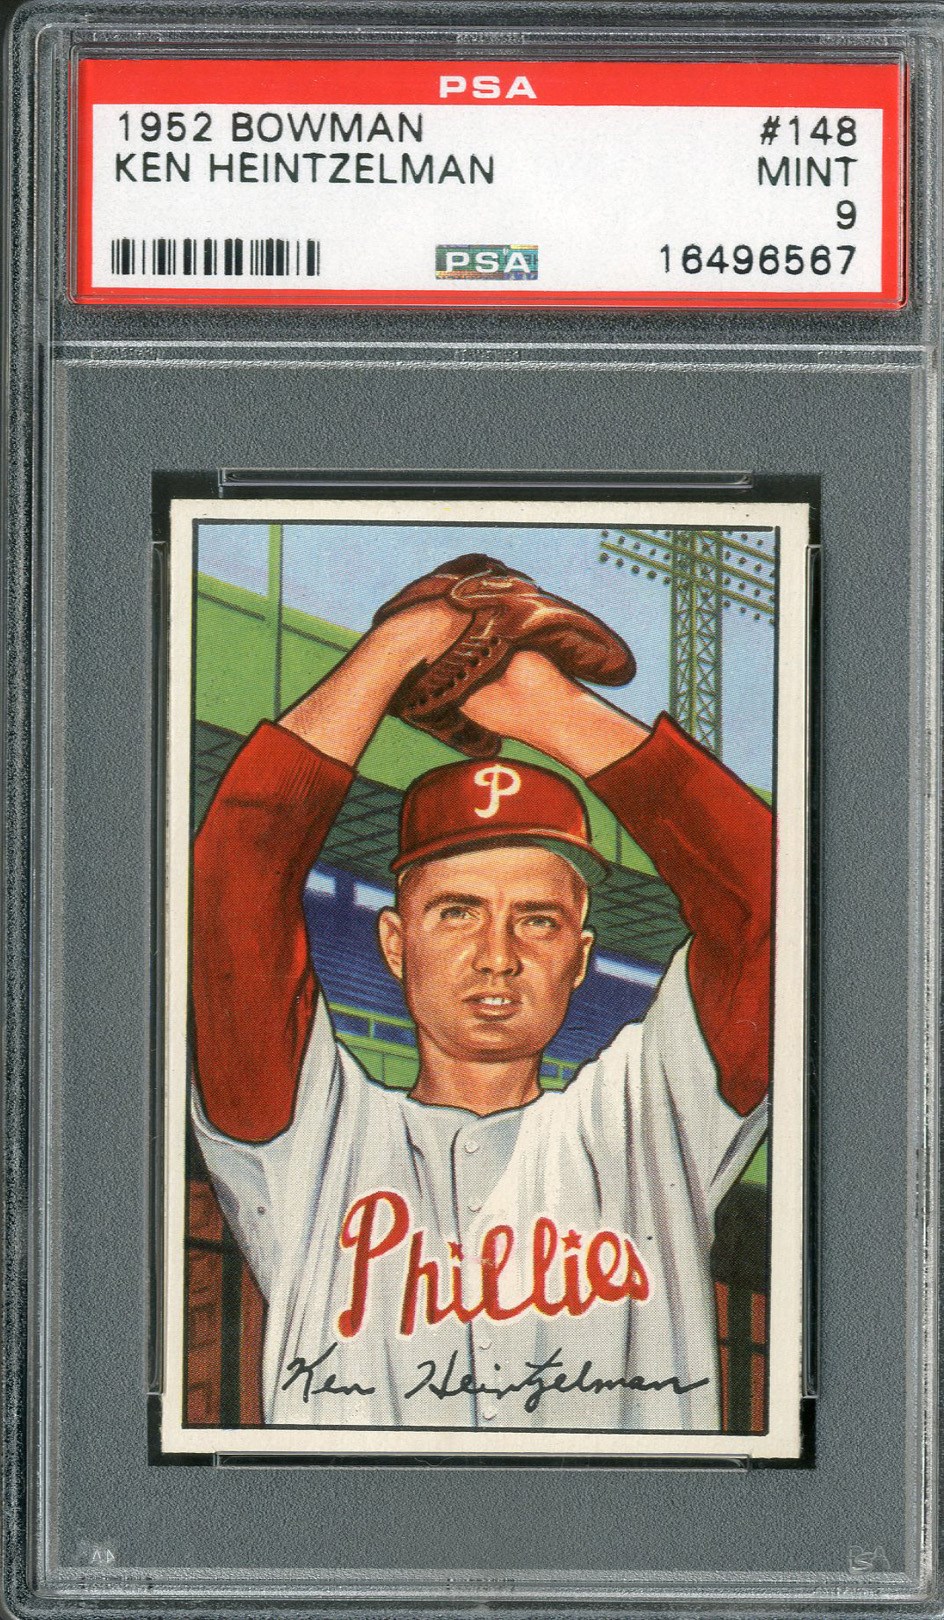 Baseball and Trading Cards - 1952 Bowman #148 Ken Heintzelman PSA MINT 9